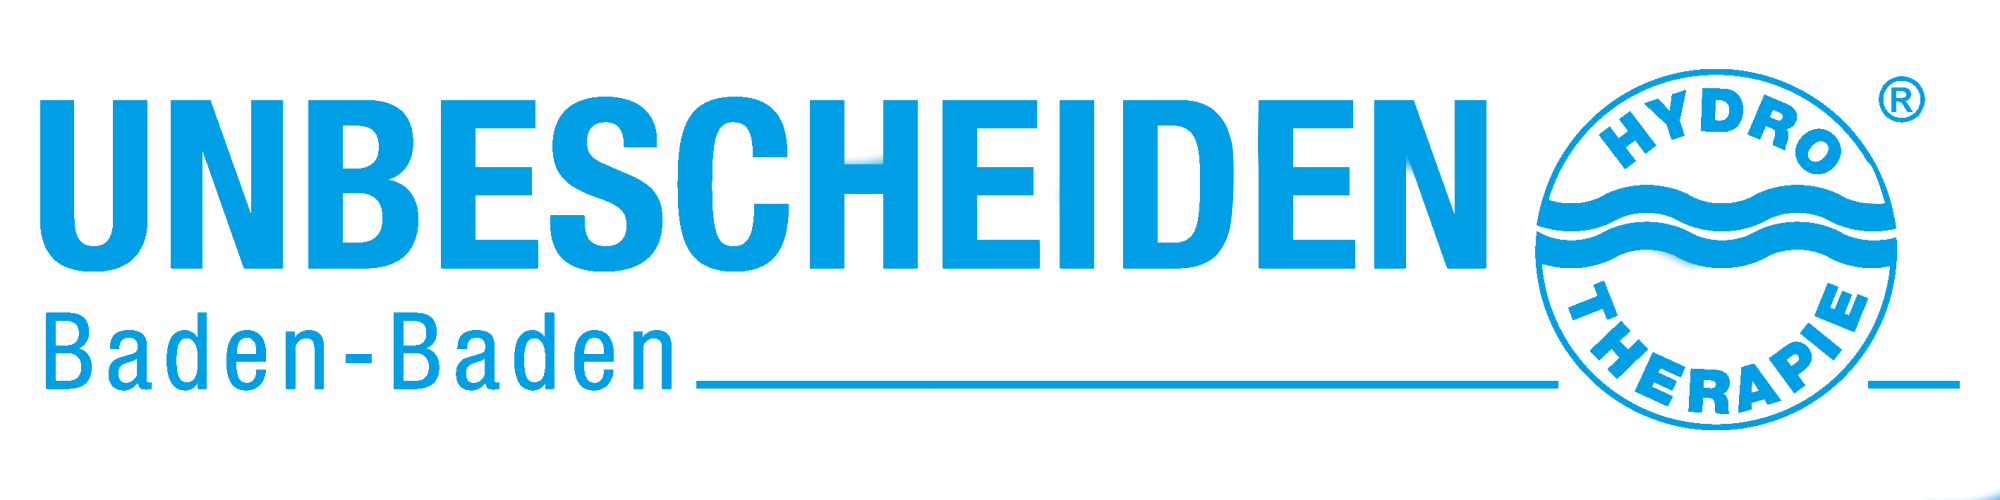 Unbescheiden GmbH